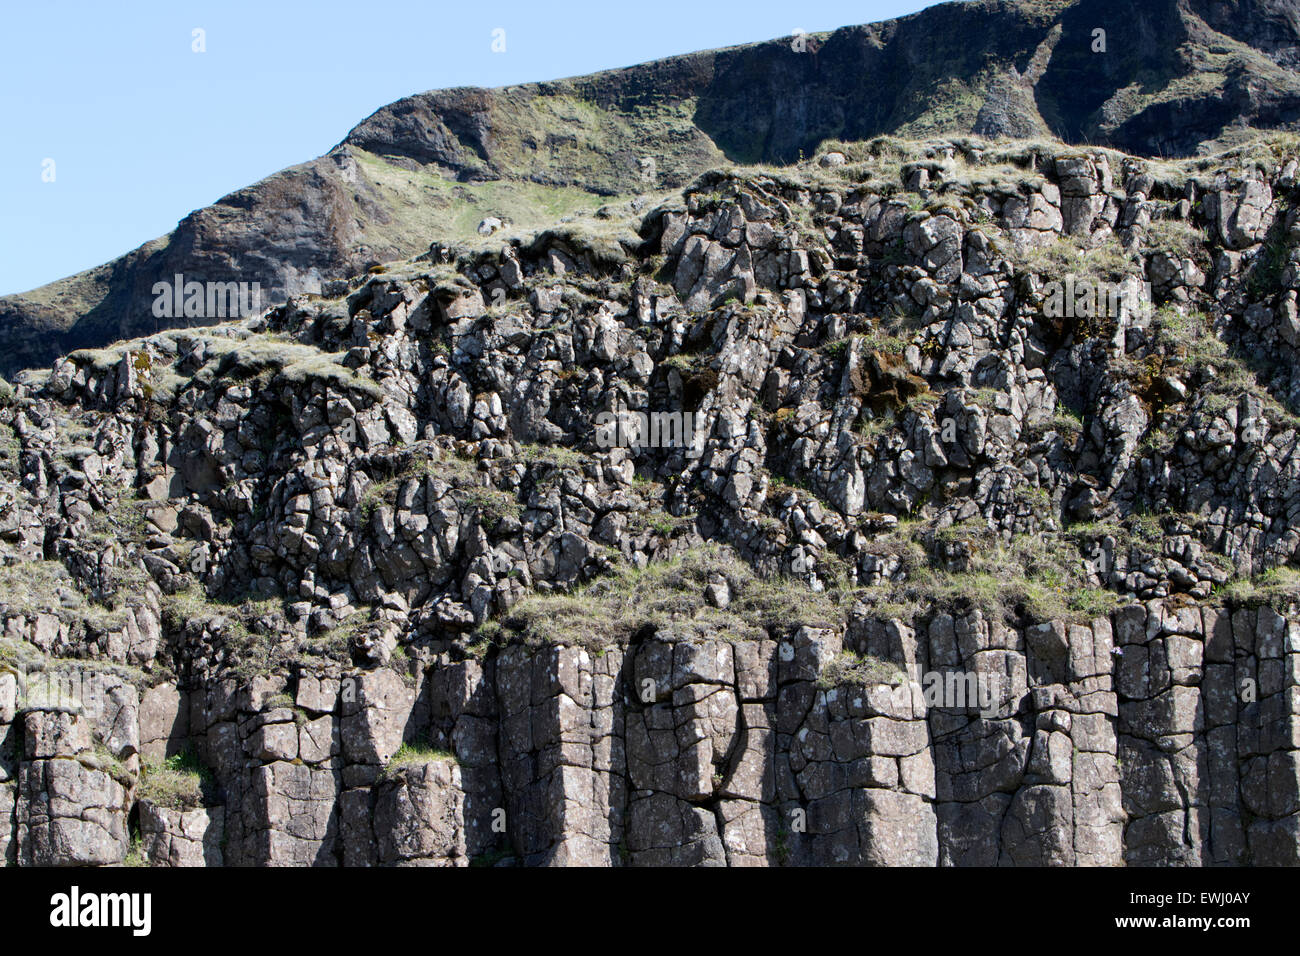 Dverghamrar colonnes de basalte volcanique roches nain et le cube de l'Islande Banque D'Images